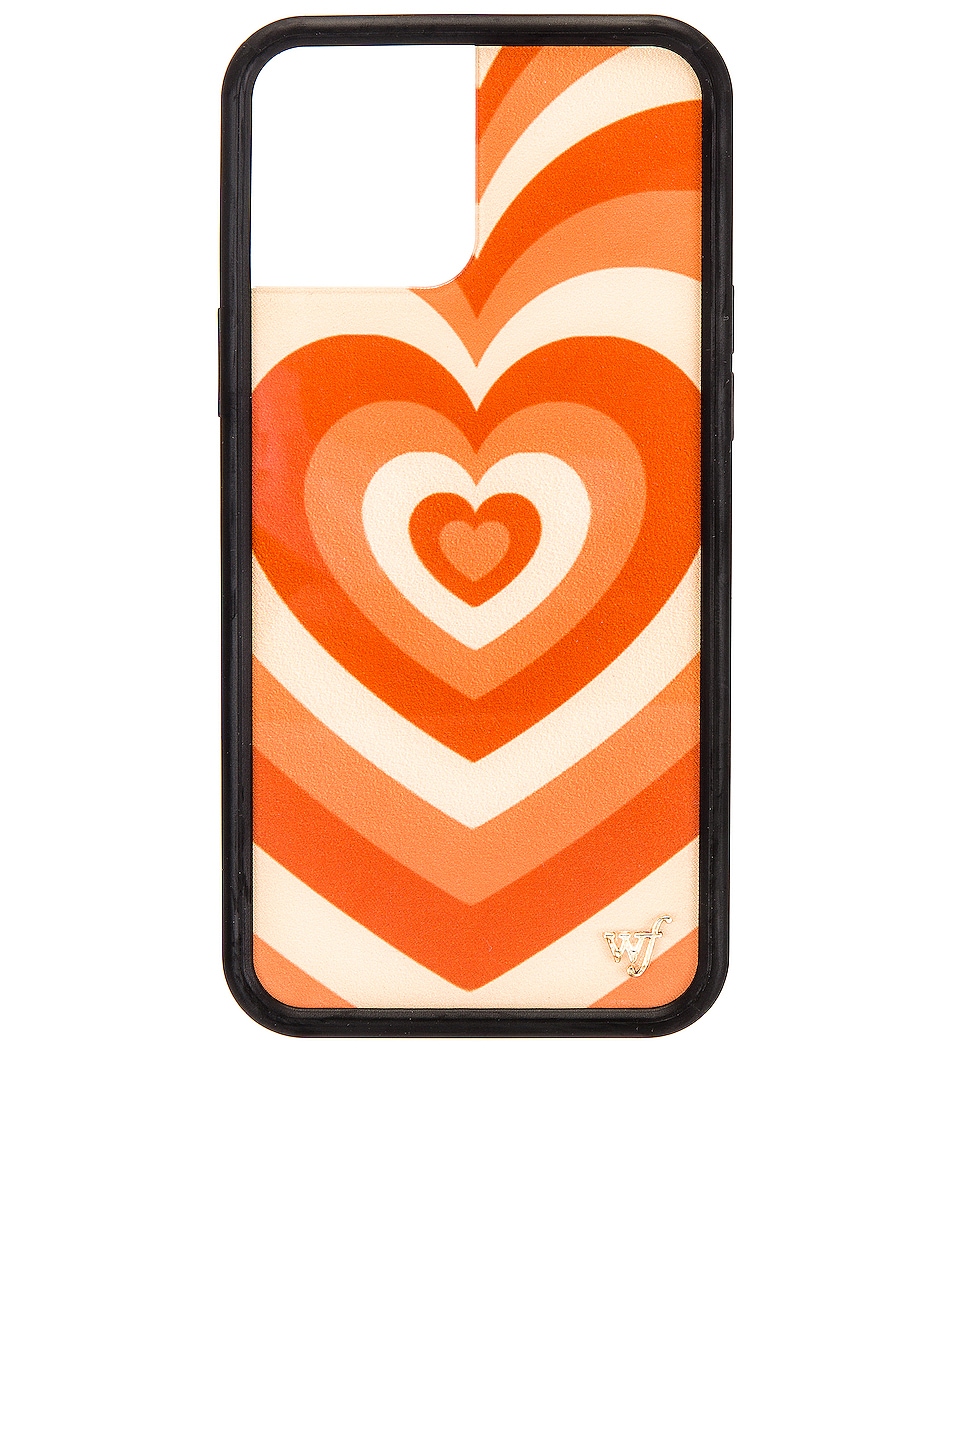 Wildflower Pumpkin Spice Latte Love iPhone 12 Pro Max Case Orange